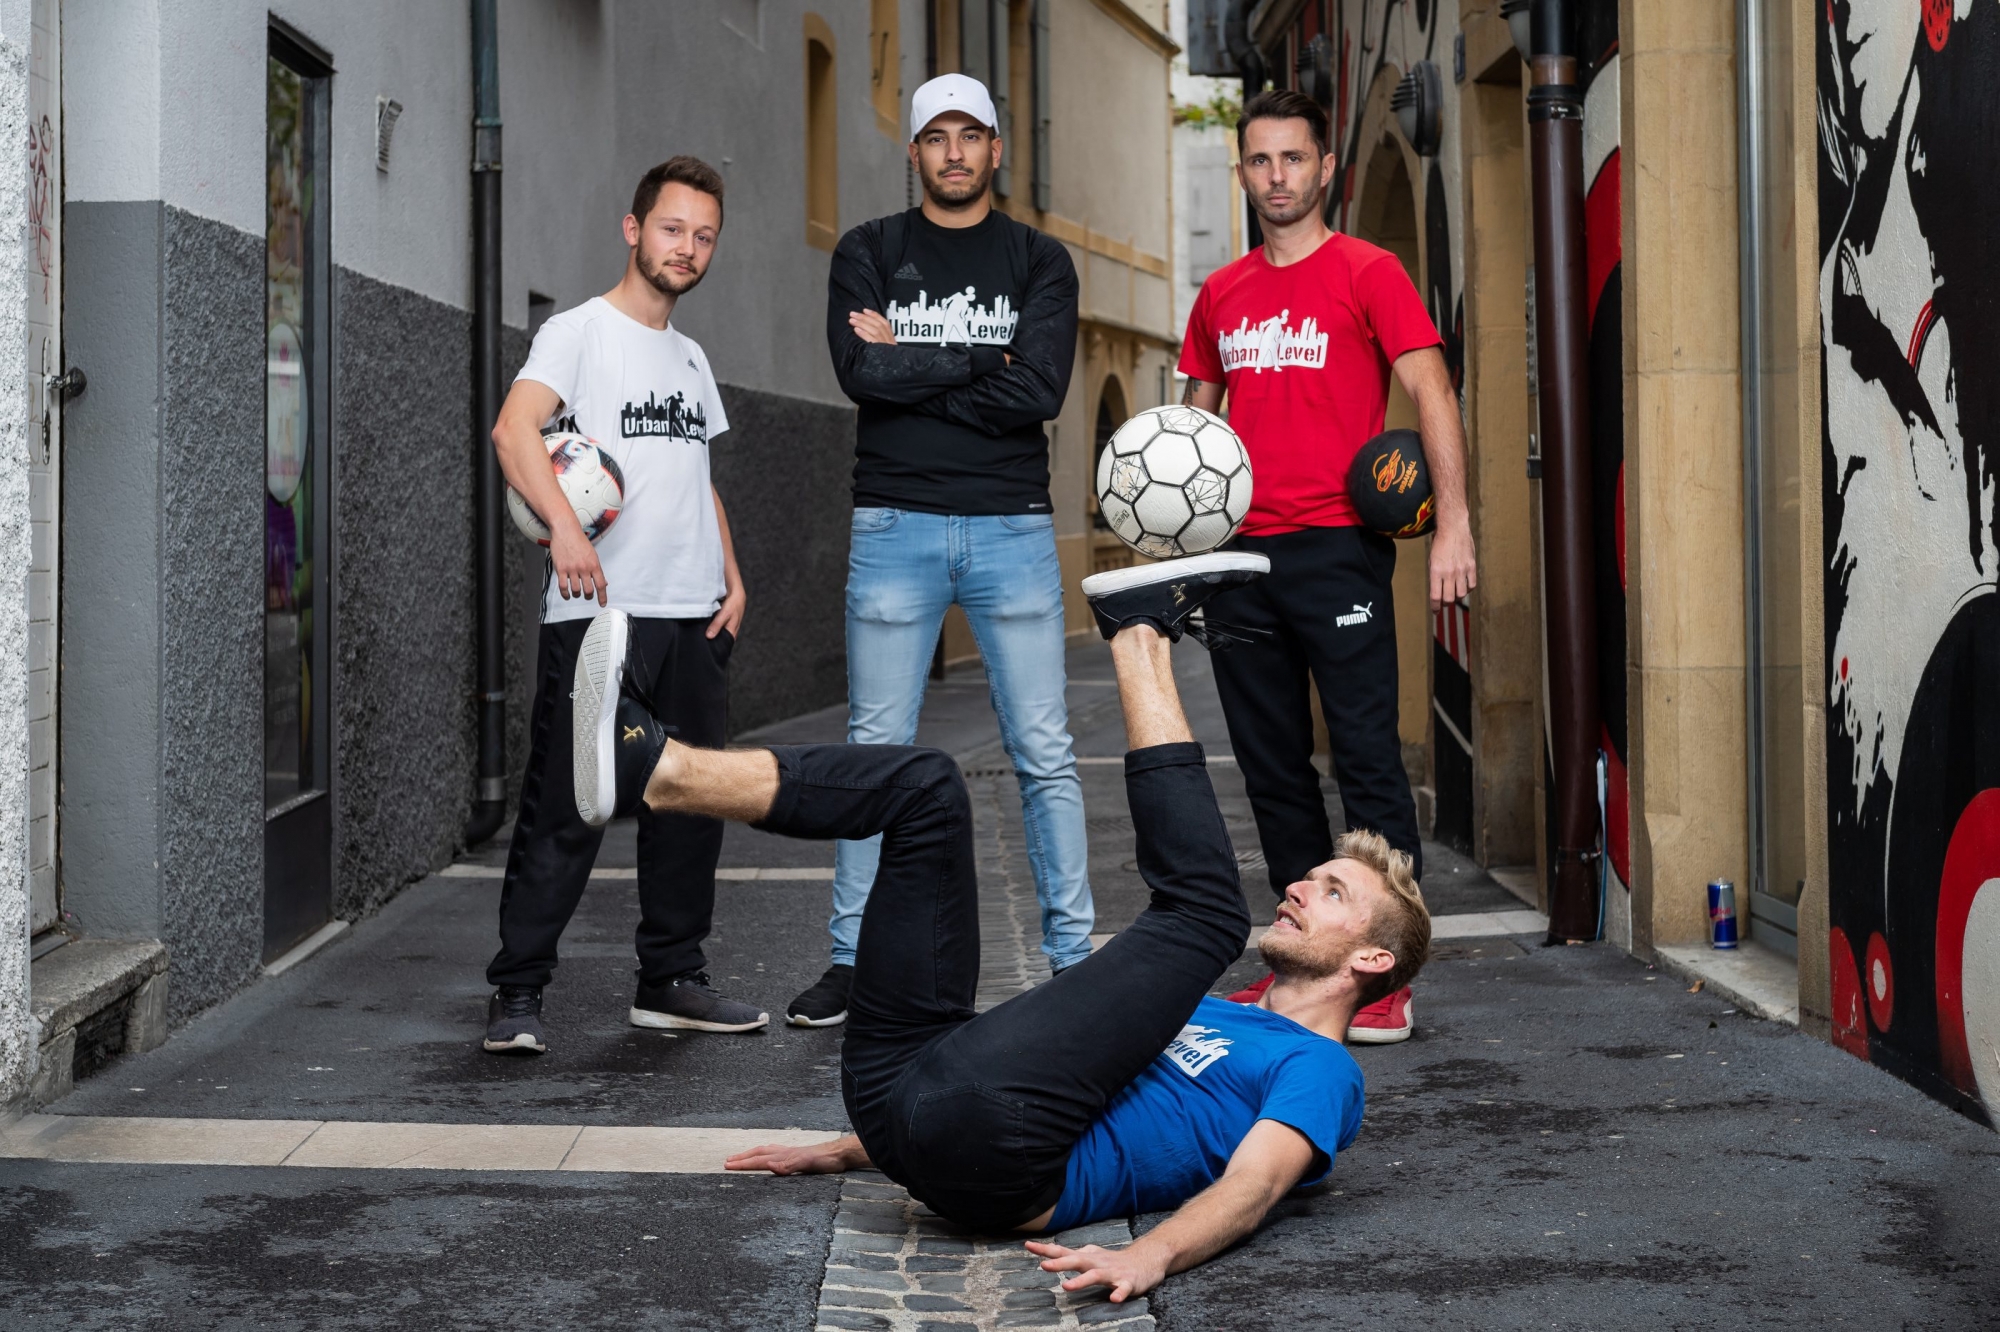 Urban level est devenu le collectif suisse de référence du football freestyle. De gauche à droite: Valentin Favre, Nadir ben Brahim, Christophe Guillod. Marc Jonin est en train de jongler.